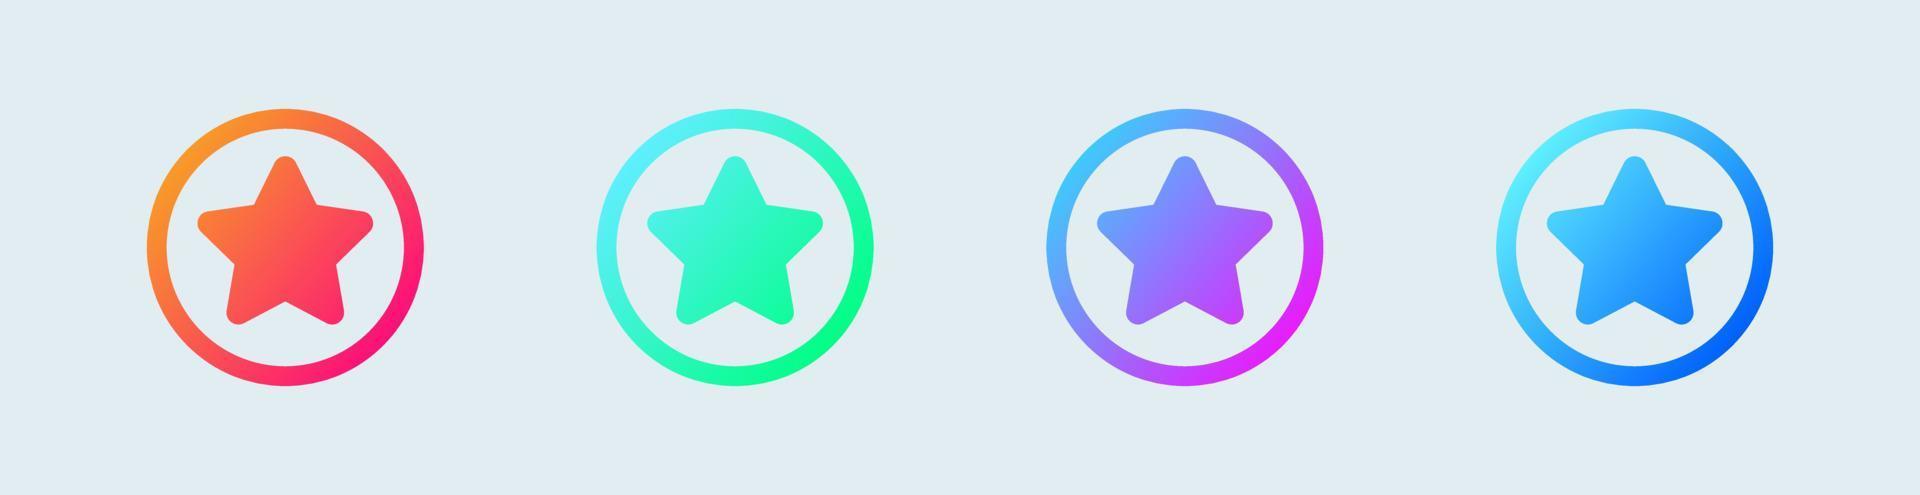 Sterne-Symbol in Kreis- und Verlaufsfarben gesetzt. Vektorsymbol für die Benutzeroberfläche. vektor